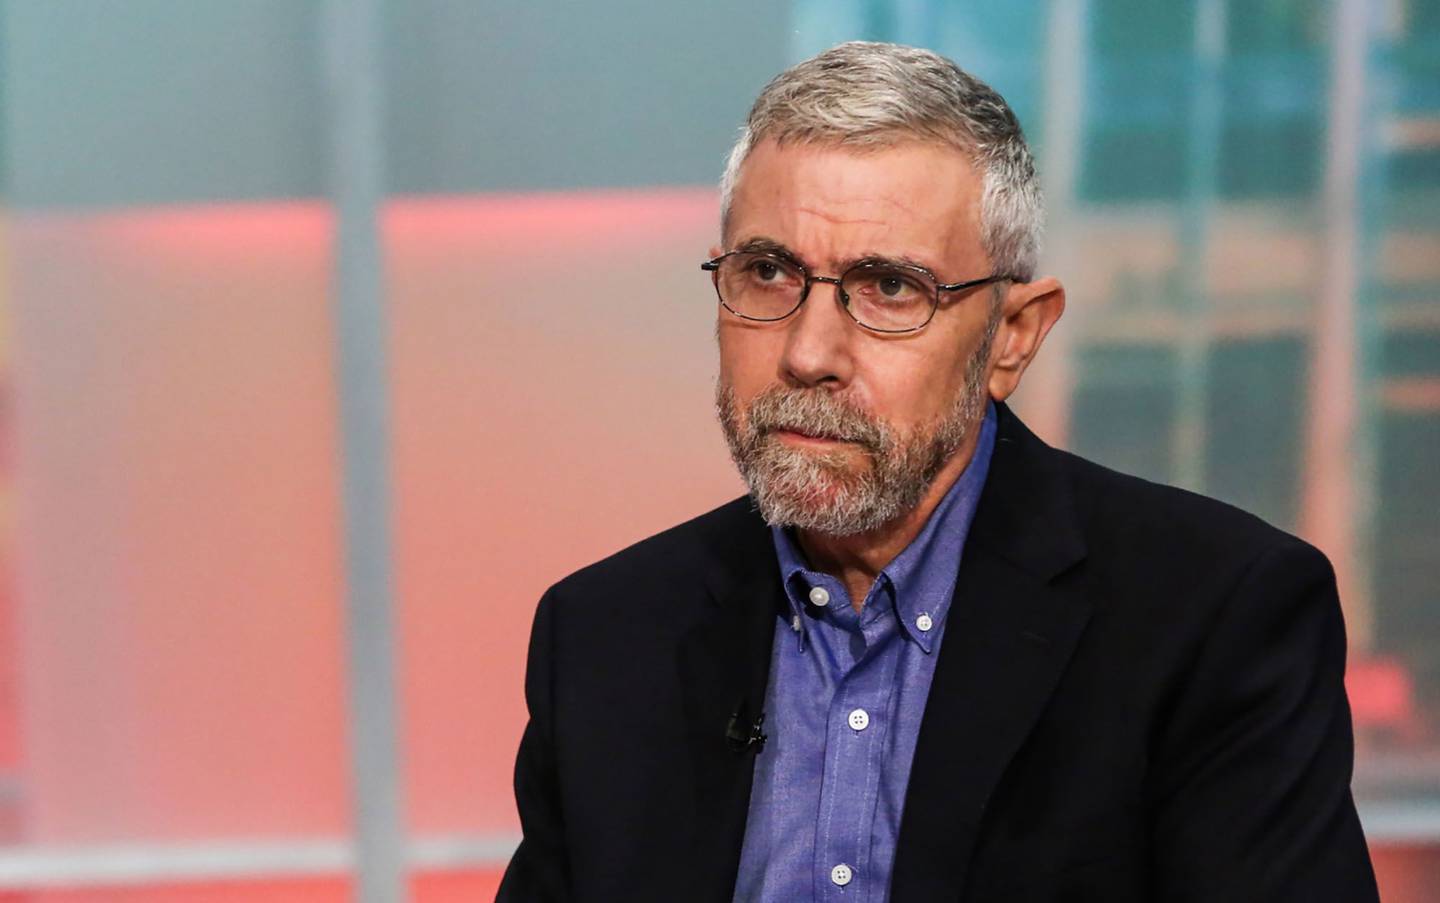 Paul Krugman dijo que México no debería limitarse a seguir a la Fed, señaló, y debería estar abierto a cambiar su rumbo